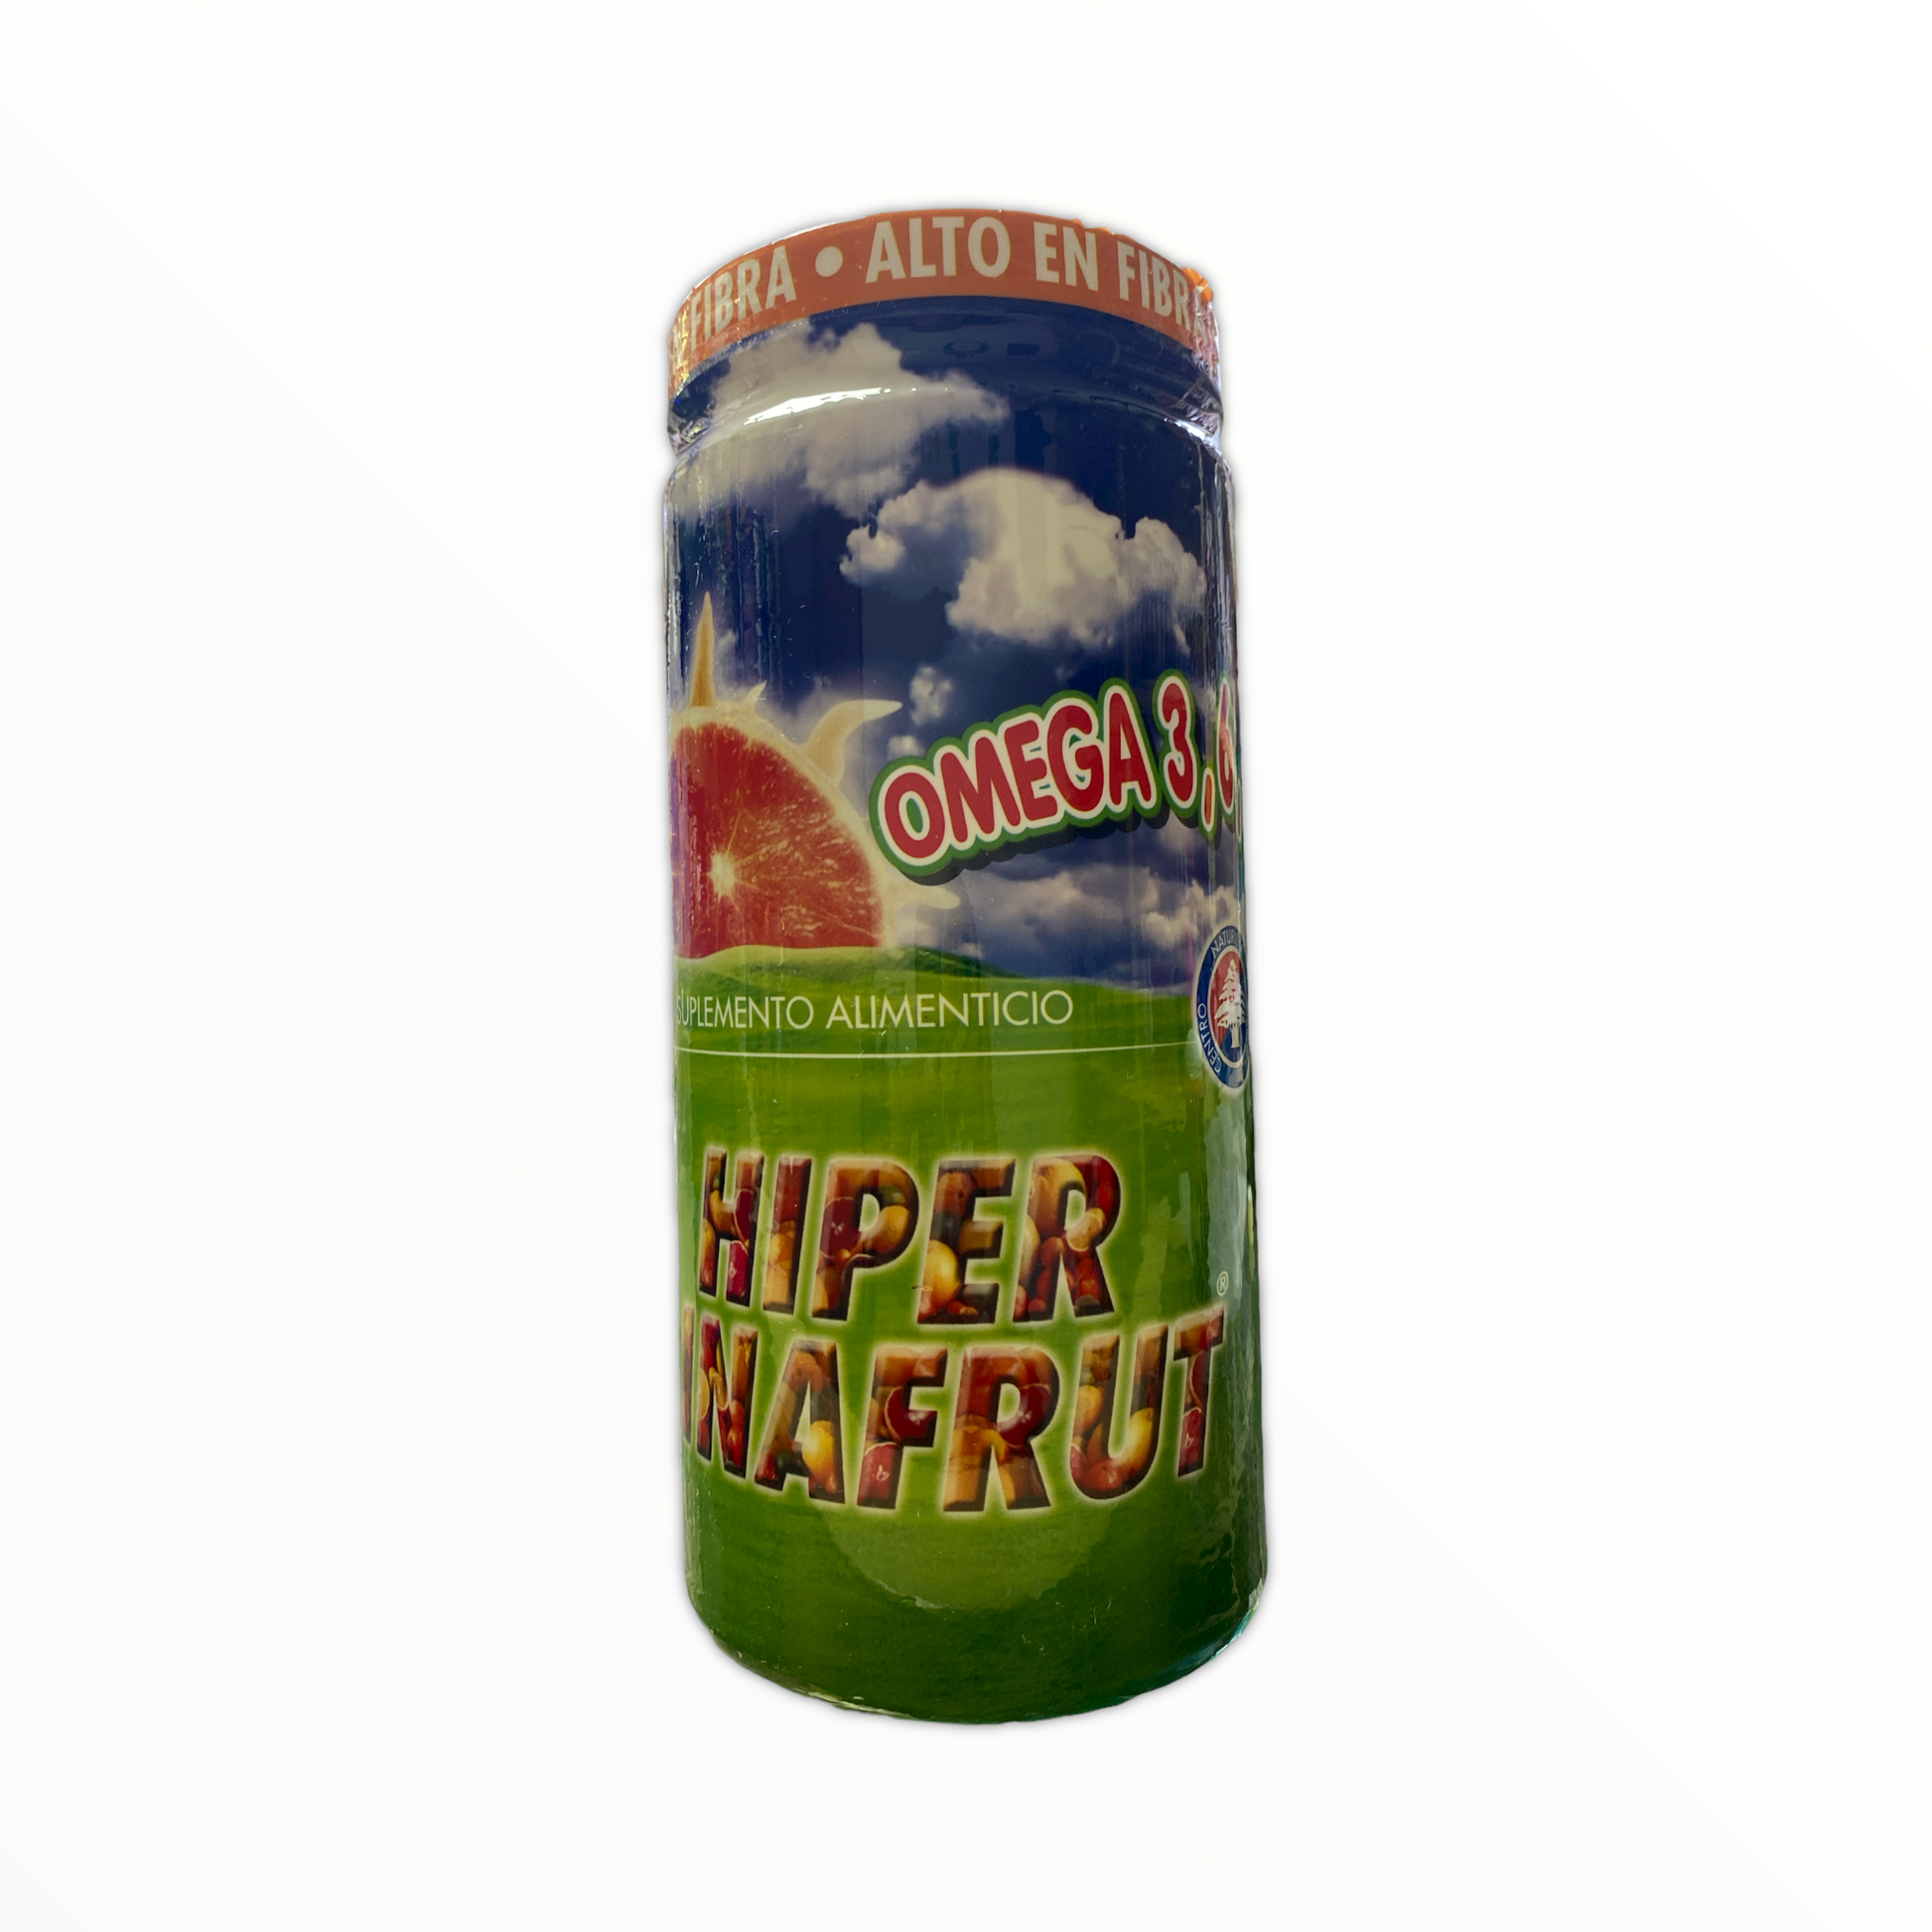 Fibra Hiperlinafrut 500 g Marury